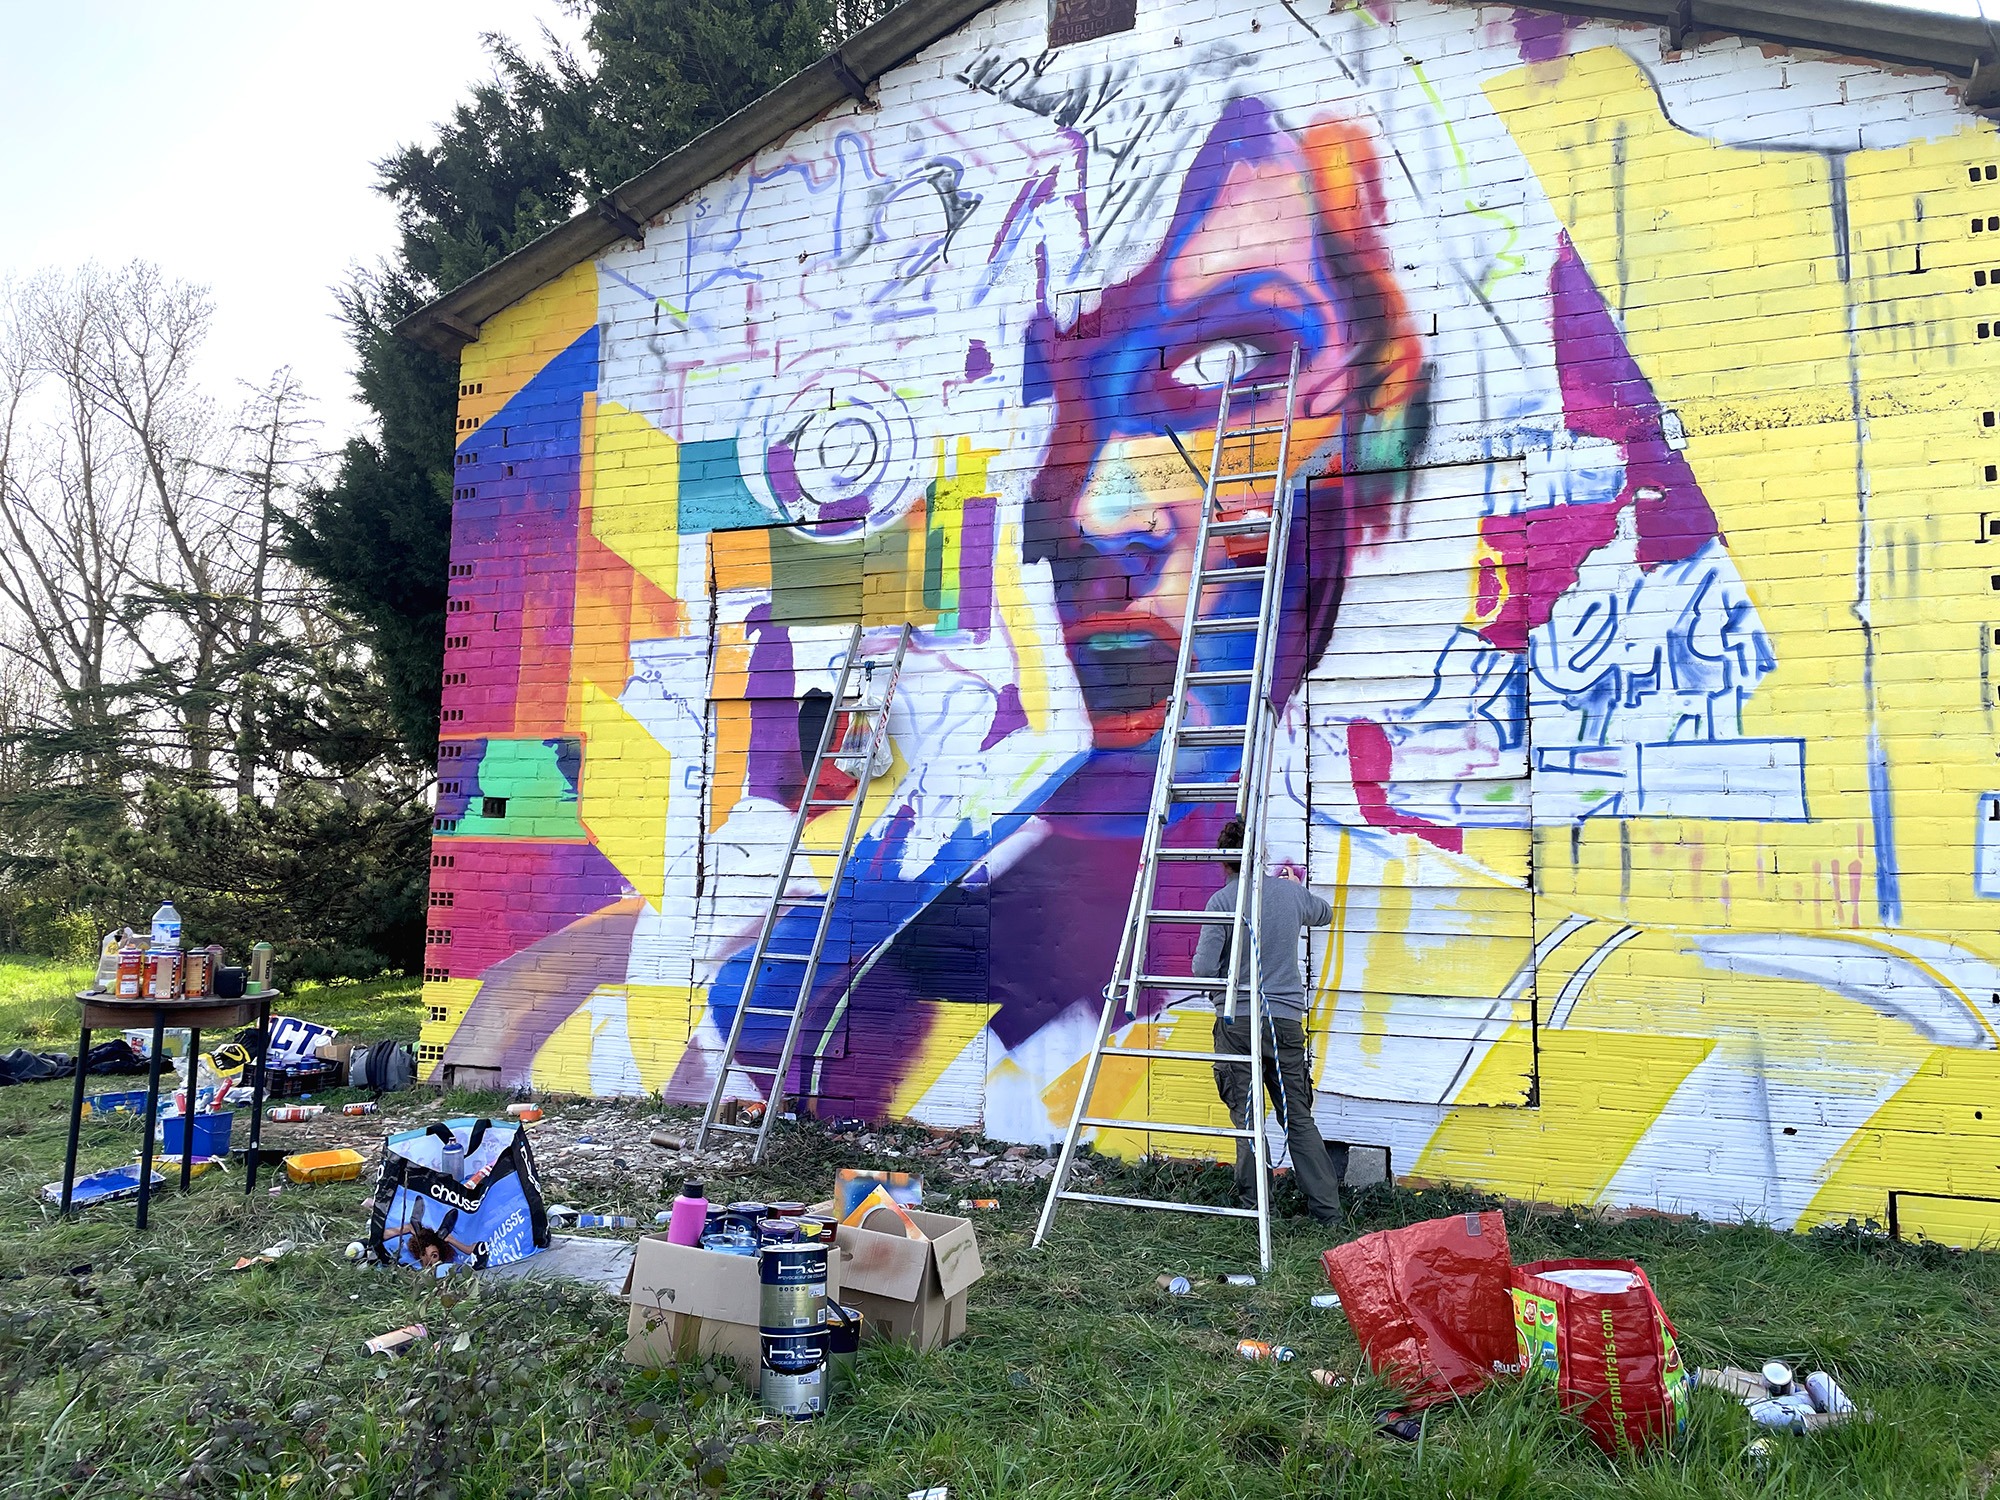 fresque-graffiti-art-halltimes-chantier-decor-wall